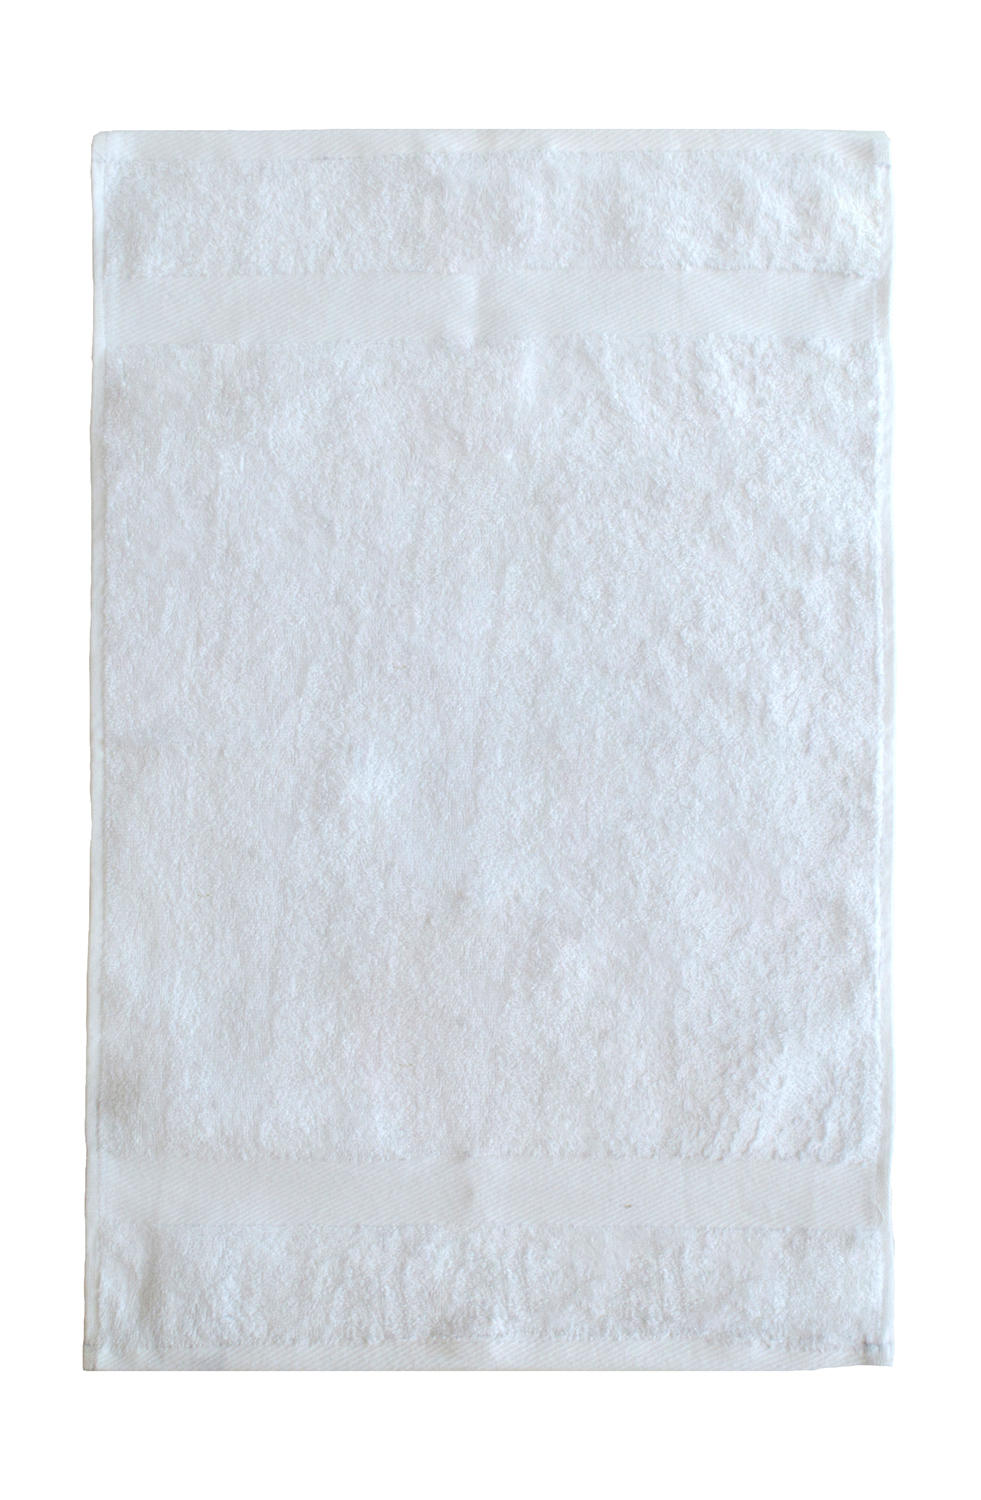  Seine Guest Towel 40x60 cm in Farbe White